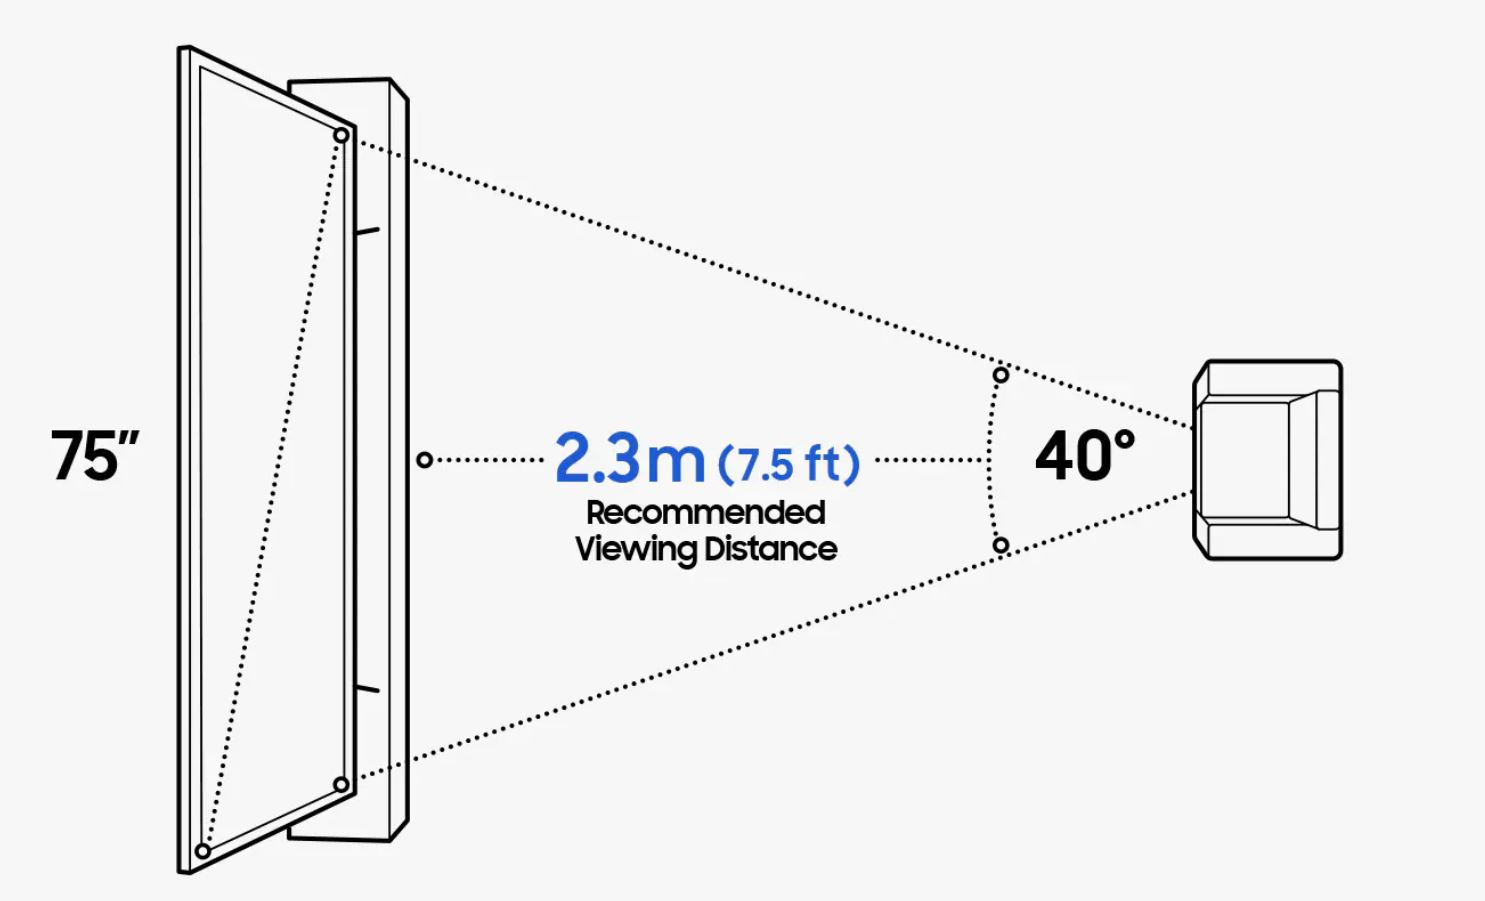 Samsung propone que la pantalla de la TV ocupe 40 grados del campo visual del telespectador